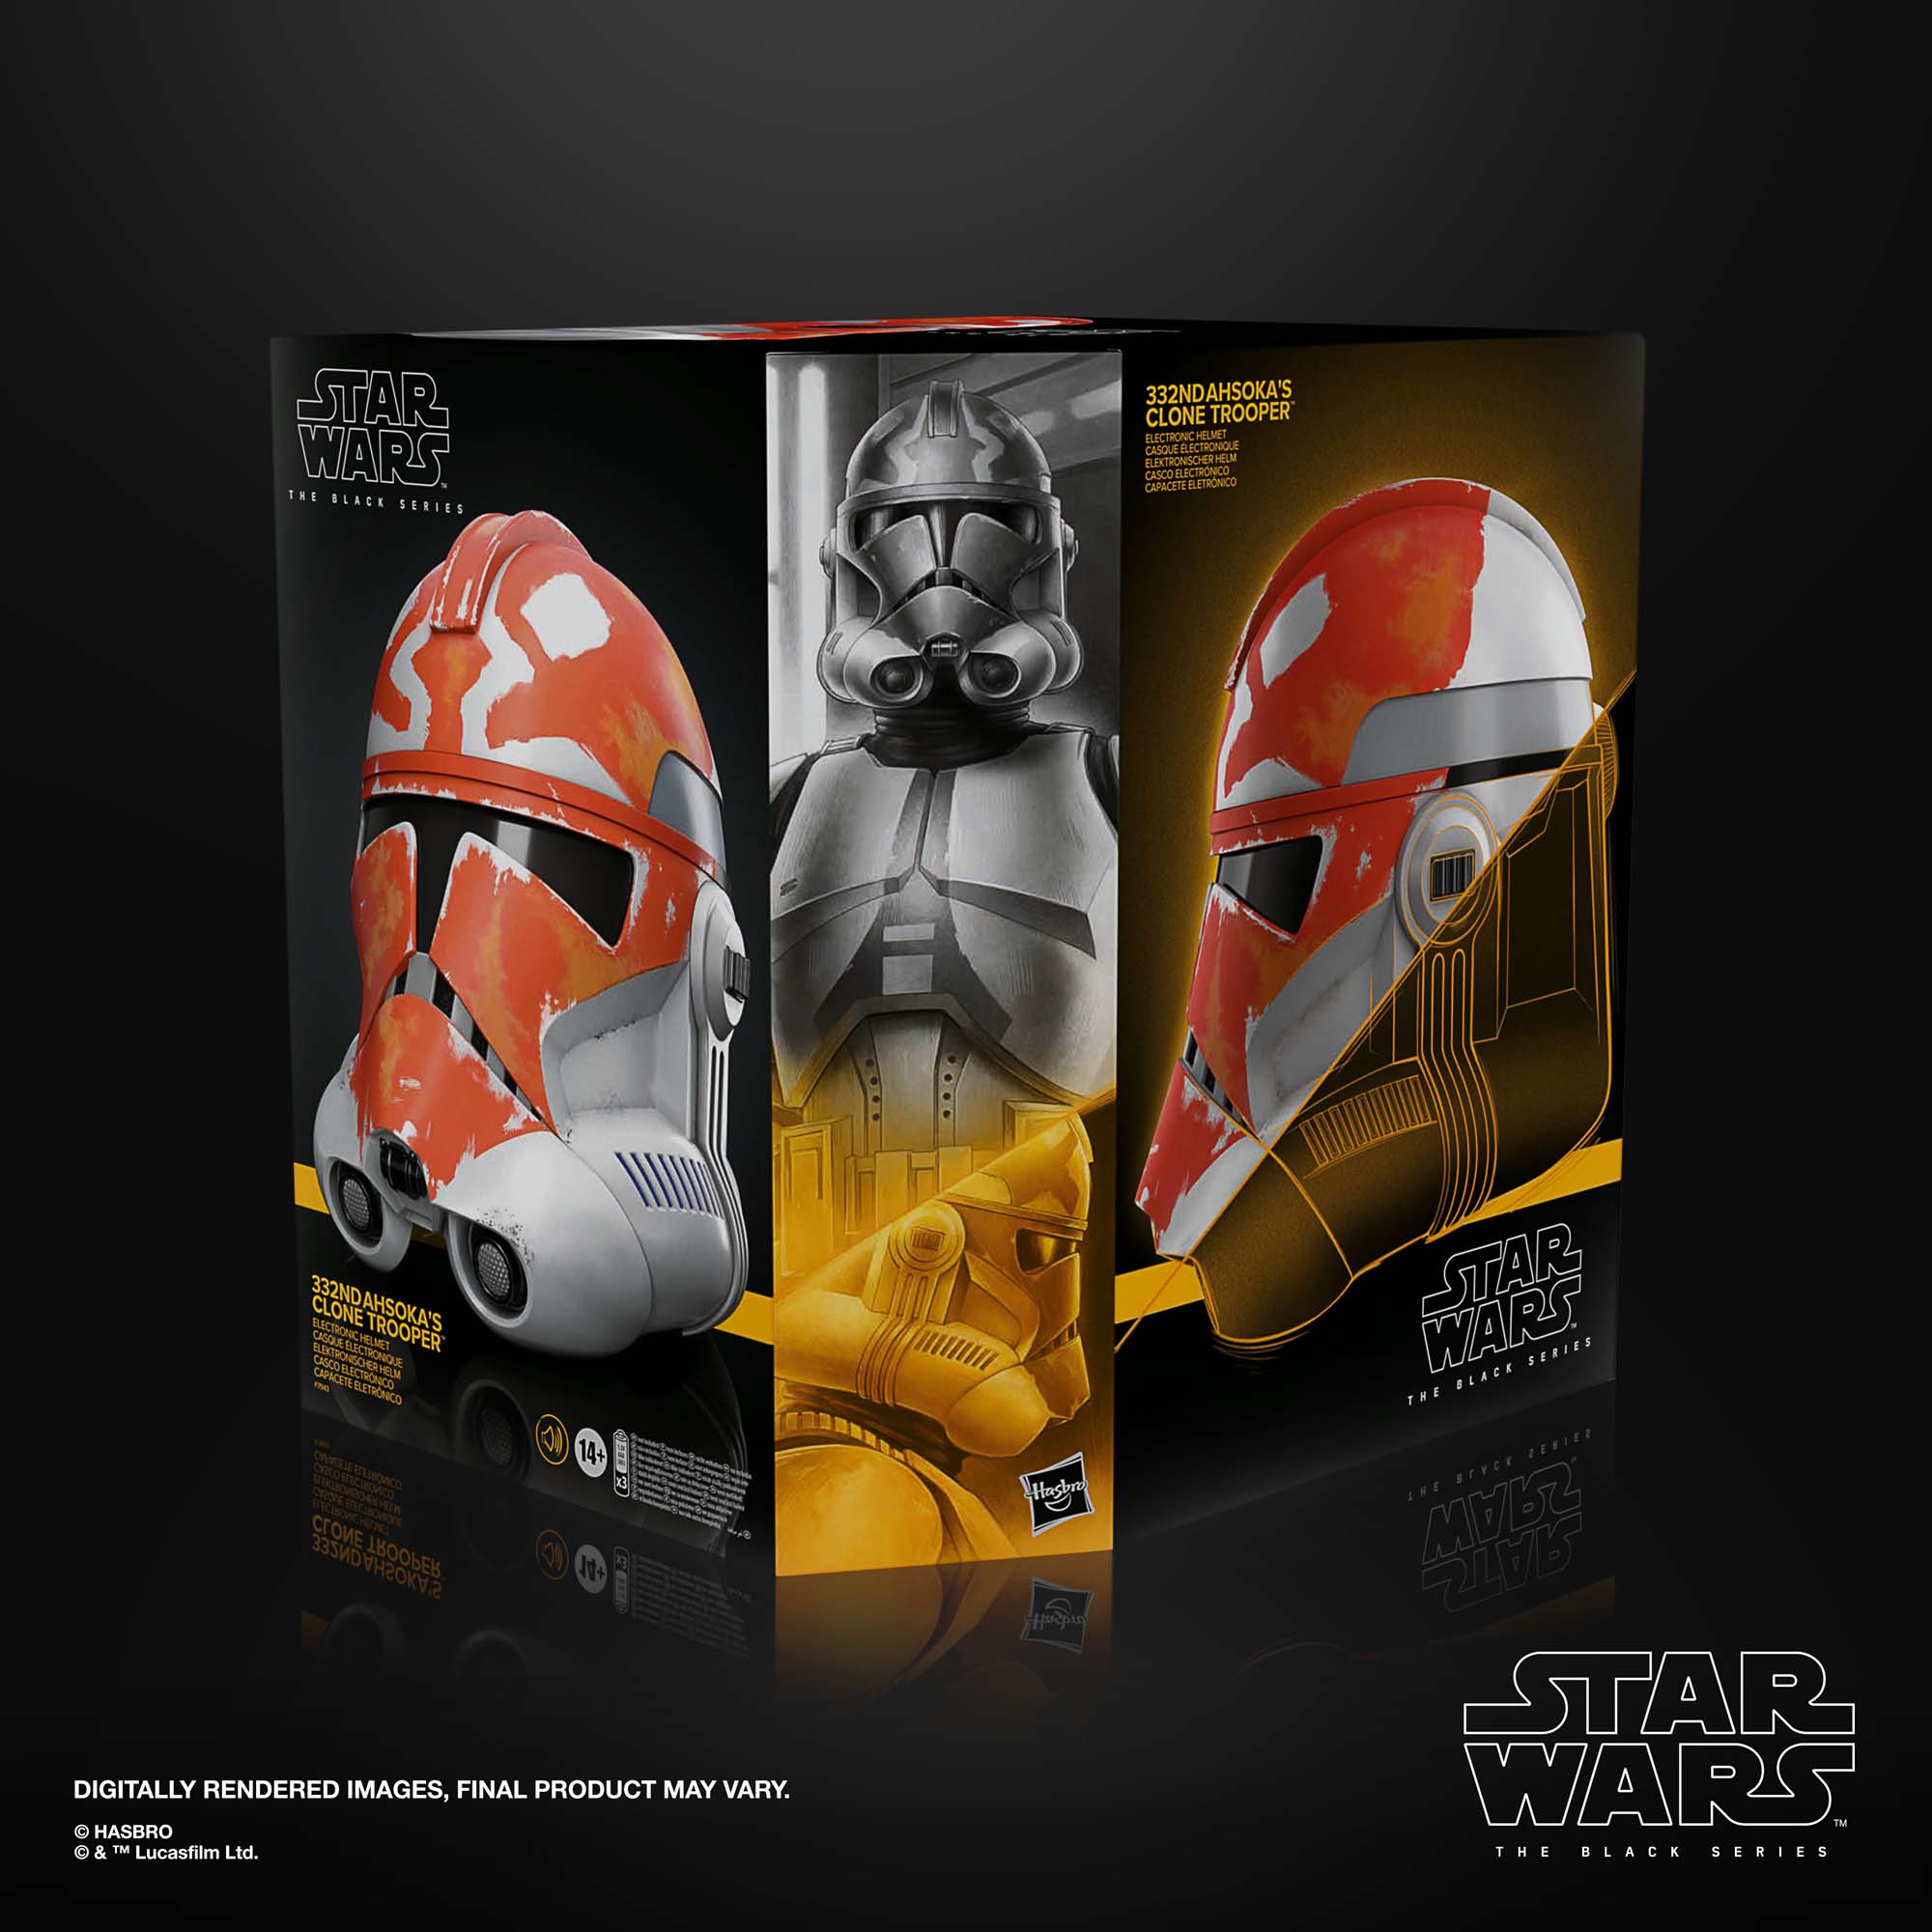 Star Wars The Black Series Ahsoka’s Clone Trooper  Helmet F79435L0 5010996123398